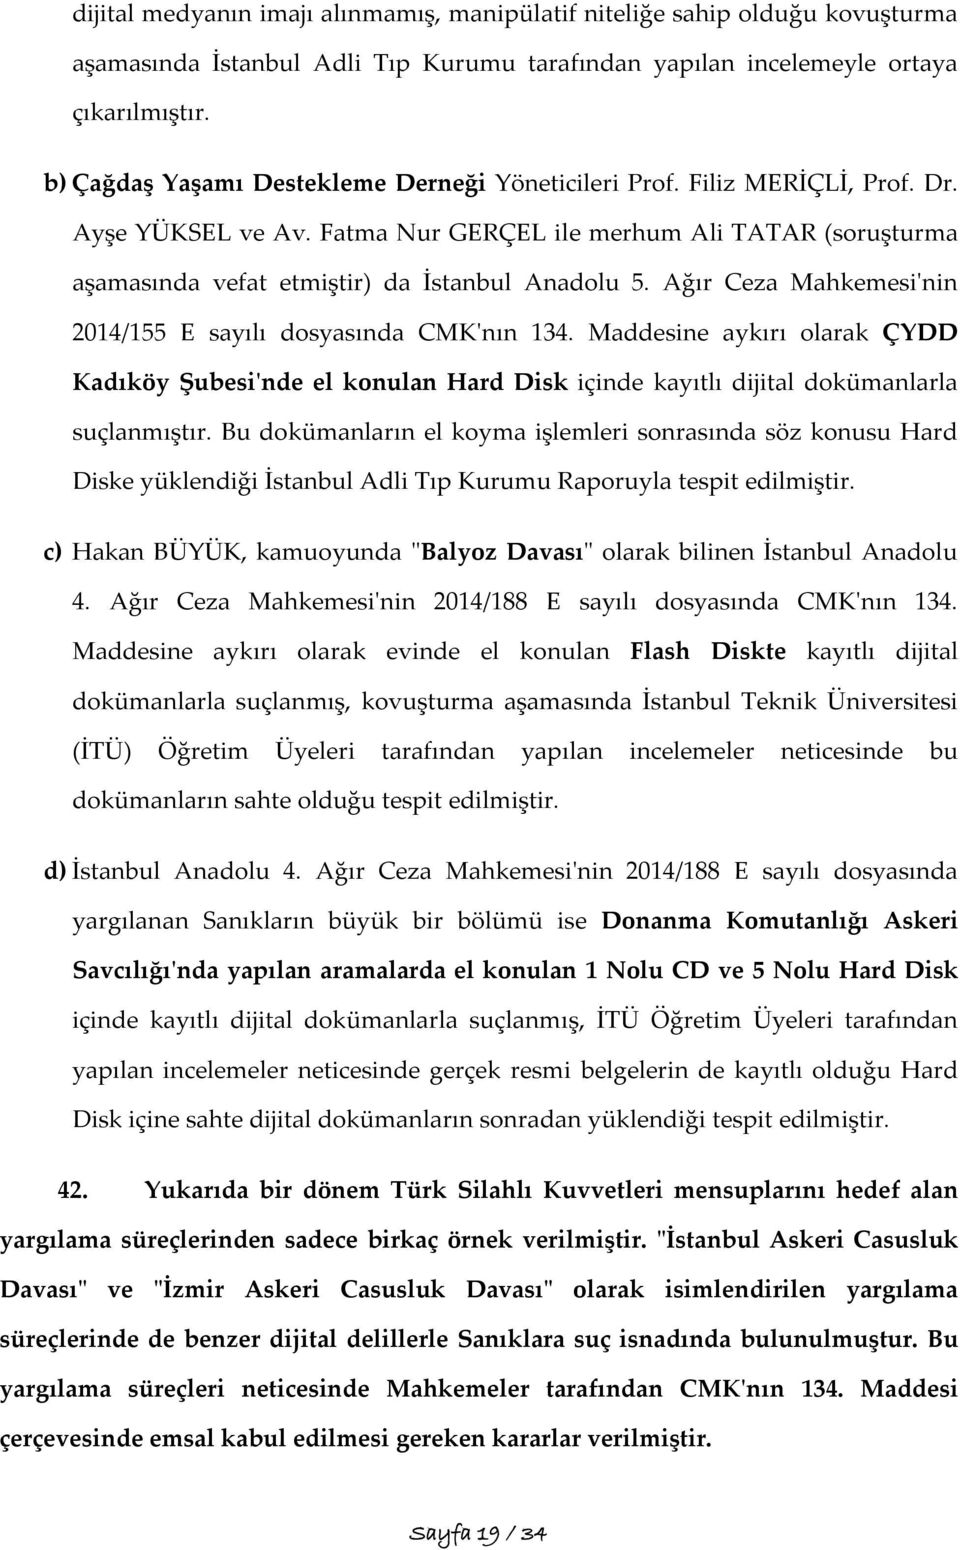 Ağır Ceza Mahkemesi'nin 2014/155 E sayılı dosyasında CMK'nın 134. Maddesine aykırı olarak ÇYDD Kadıköy Şubesi'nde el konulan Hard Disk içinde kayıtlı dijital dokümanlarla suçlanmıştır.